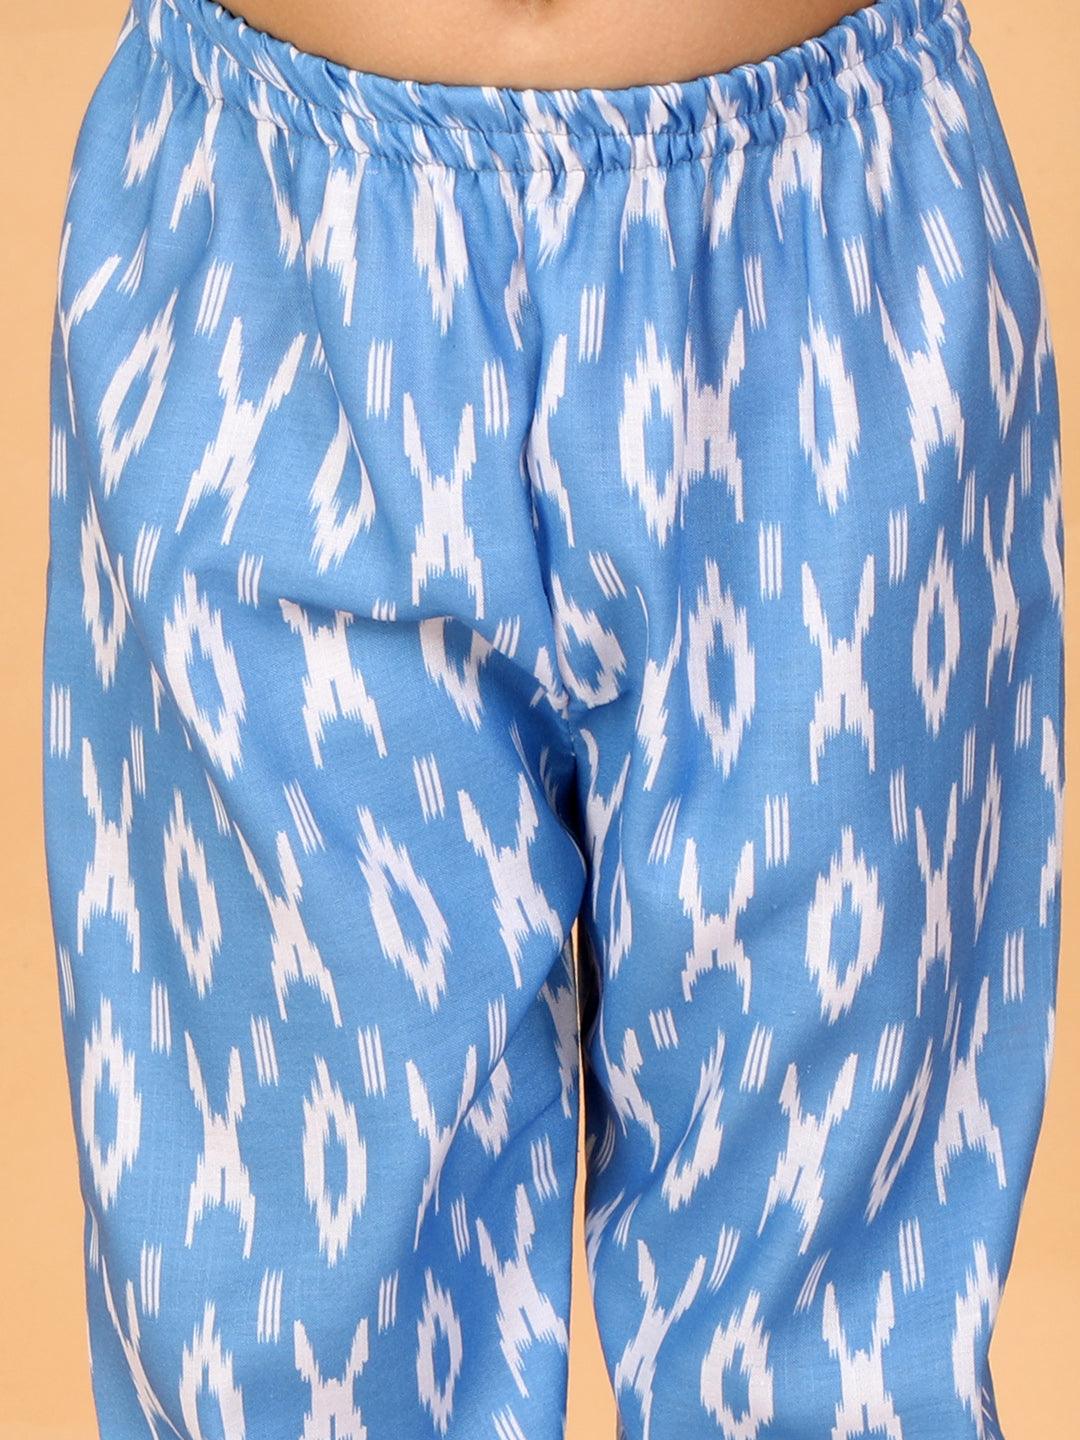 Boy's Aqua And White Jacket, Kurta and Pyjama Set & Girl's Aqua Blue Kurta And Pant Set - Vastramay - Indiakreations